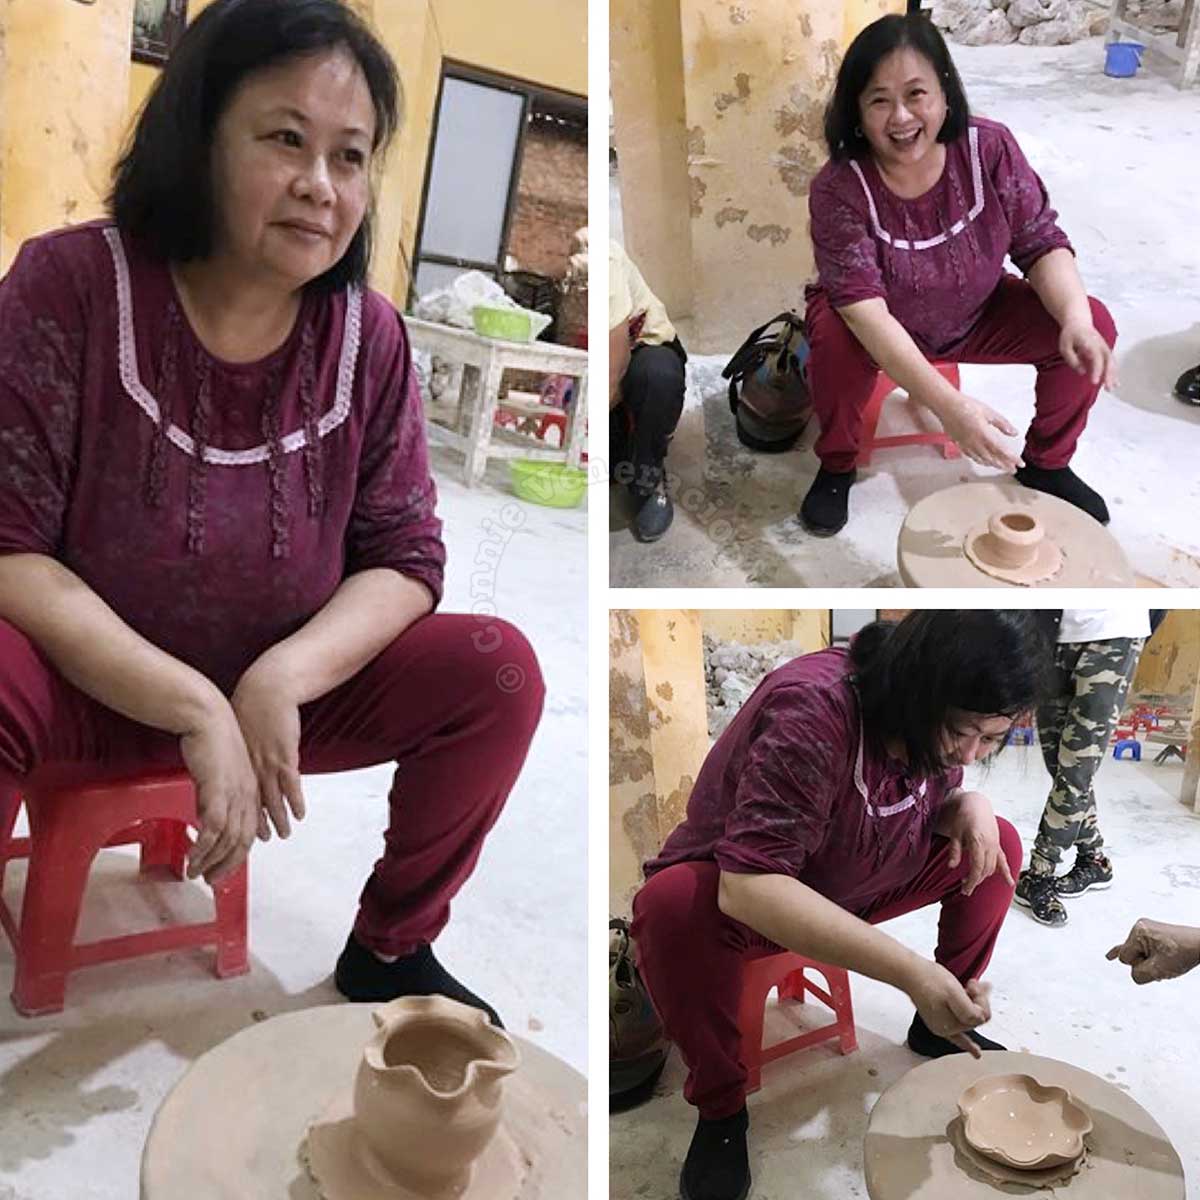 Connie Veneracion at a pottery class in Bat Trang, Vietnam